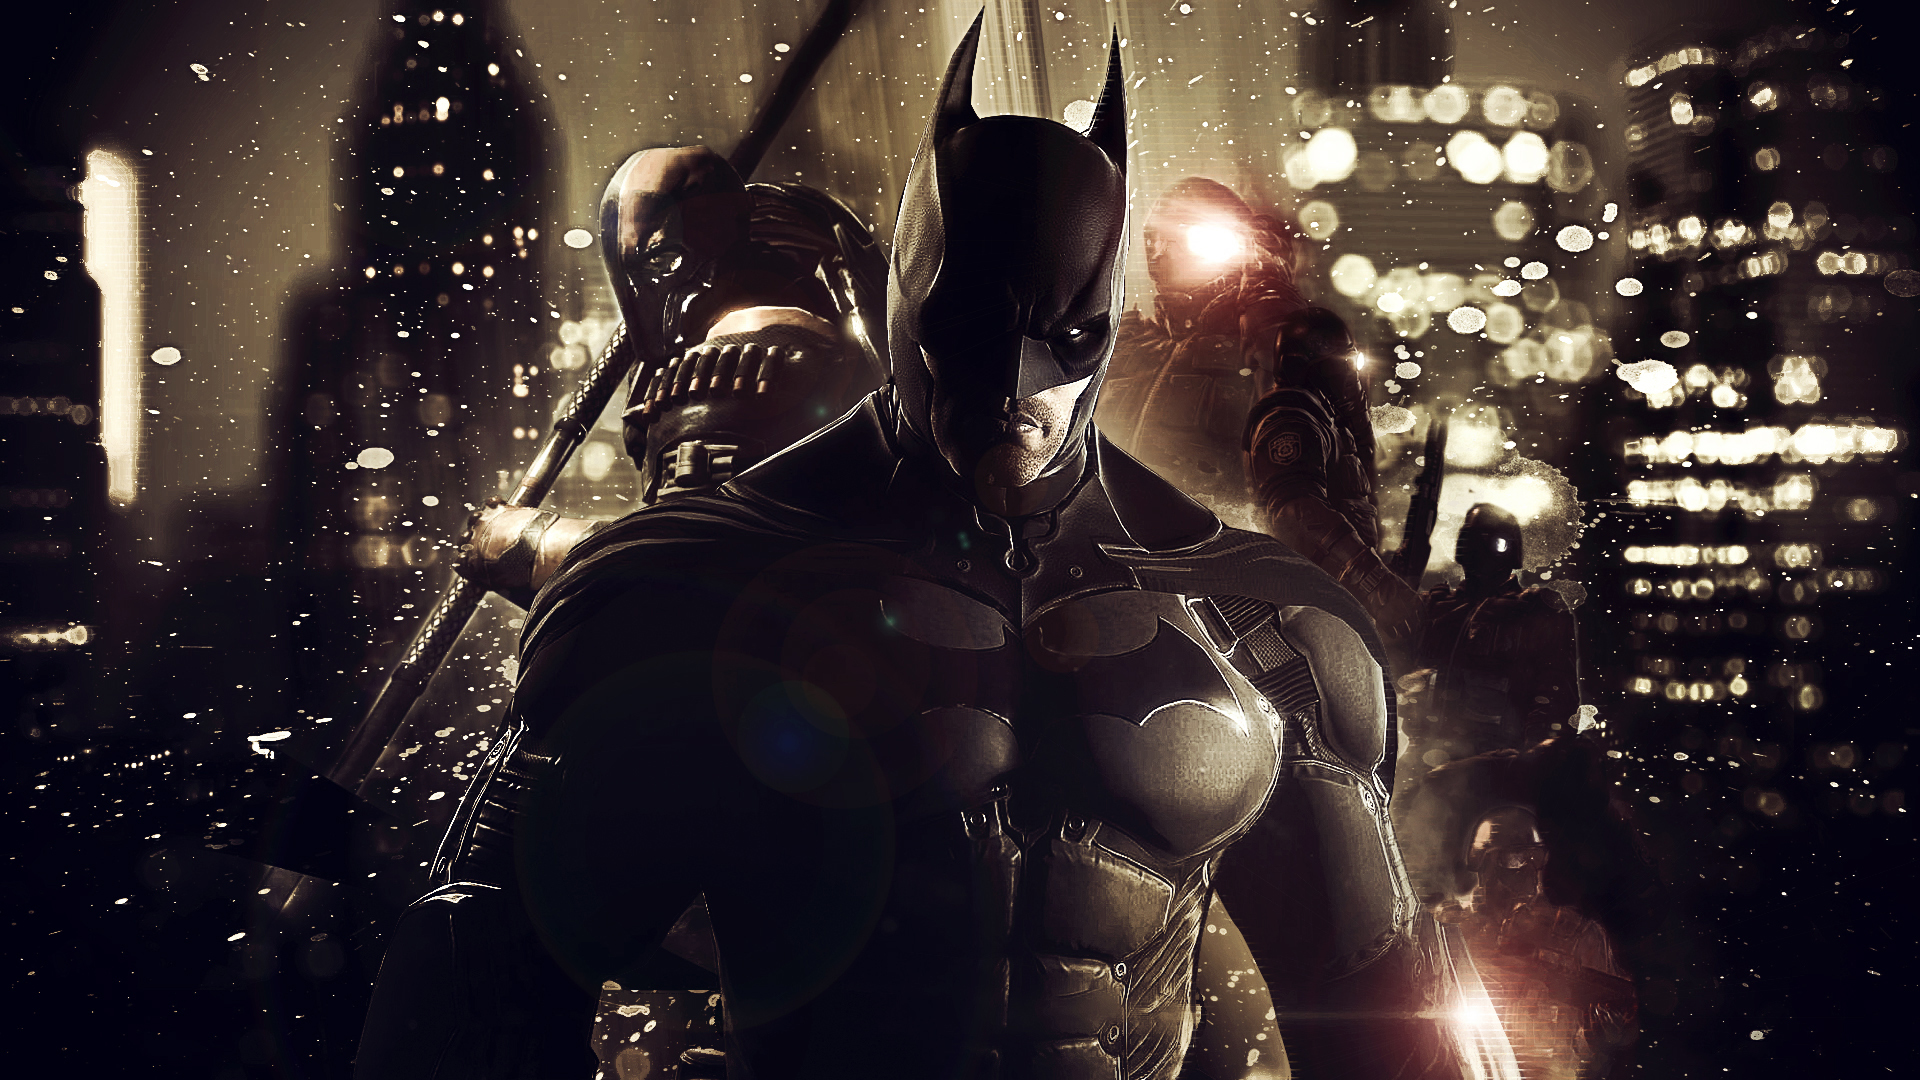 Batman Arkham Origins , HD Wallpaper & Backgrounds